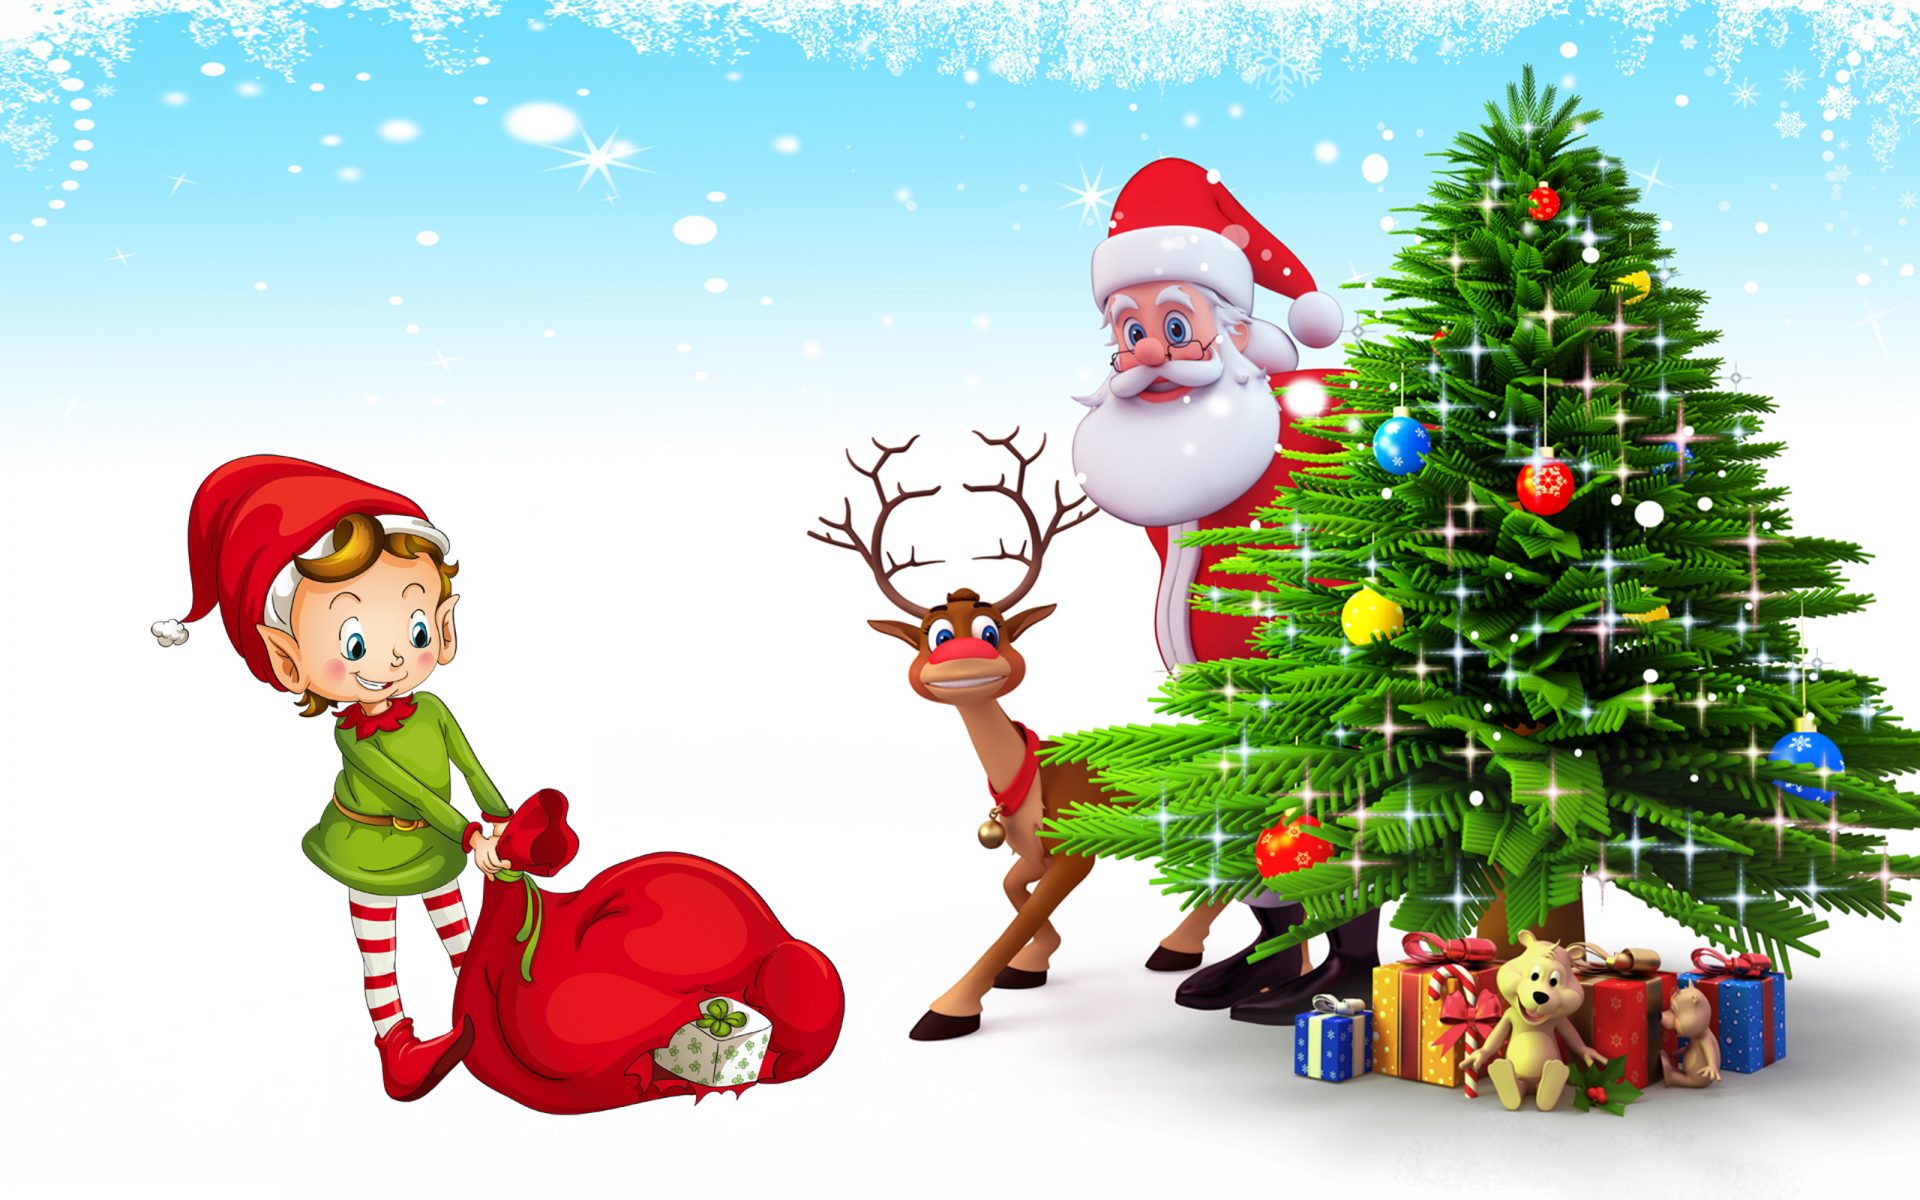 산타 클로스 배경 화면 무료 다운로드,크리스마스,산타 클로스,크리스마스 트리,크리스마스 이브,소설 속의 인물